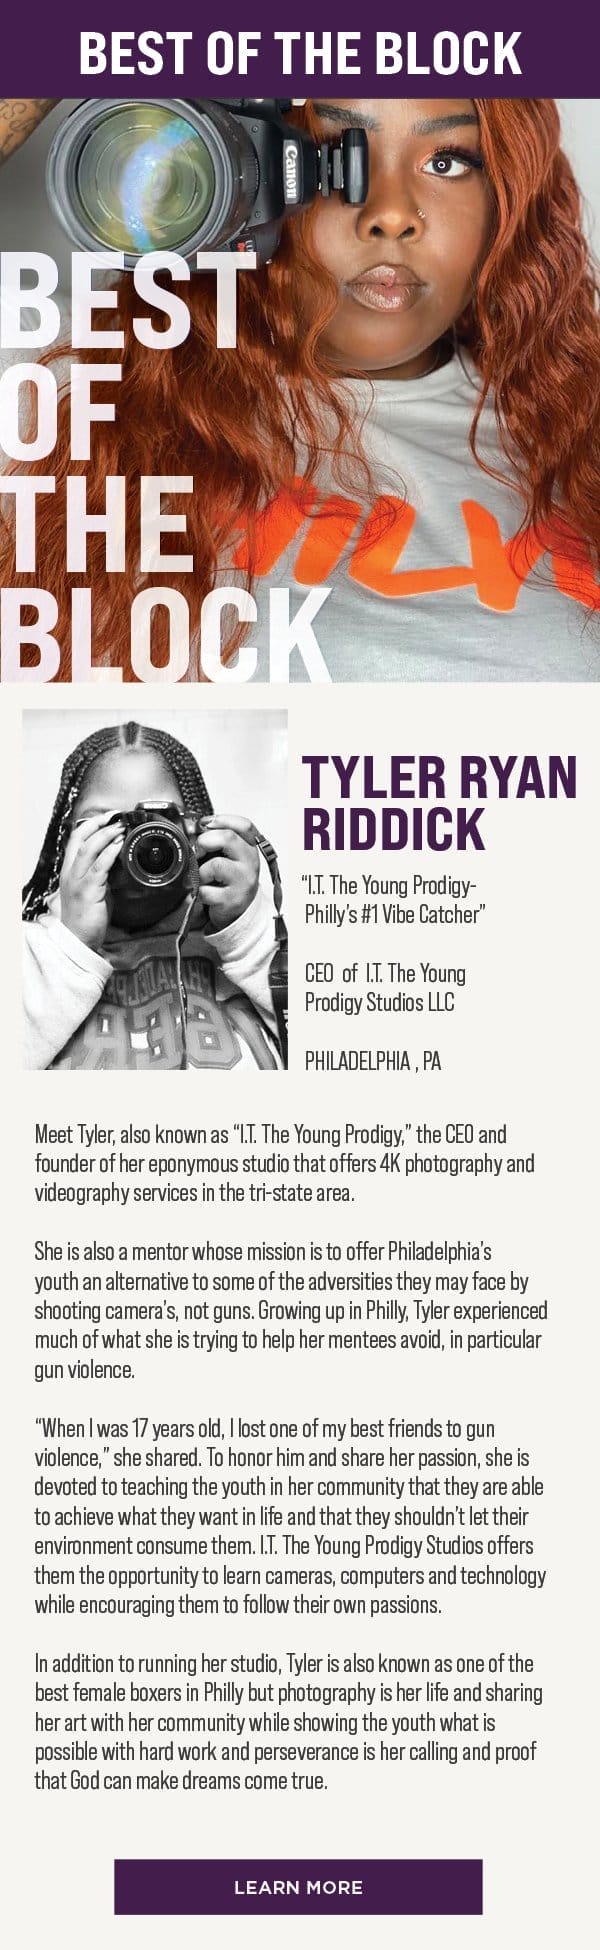 Tyler Ryan Riddick. Learn More